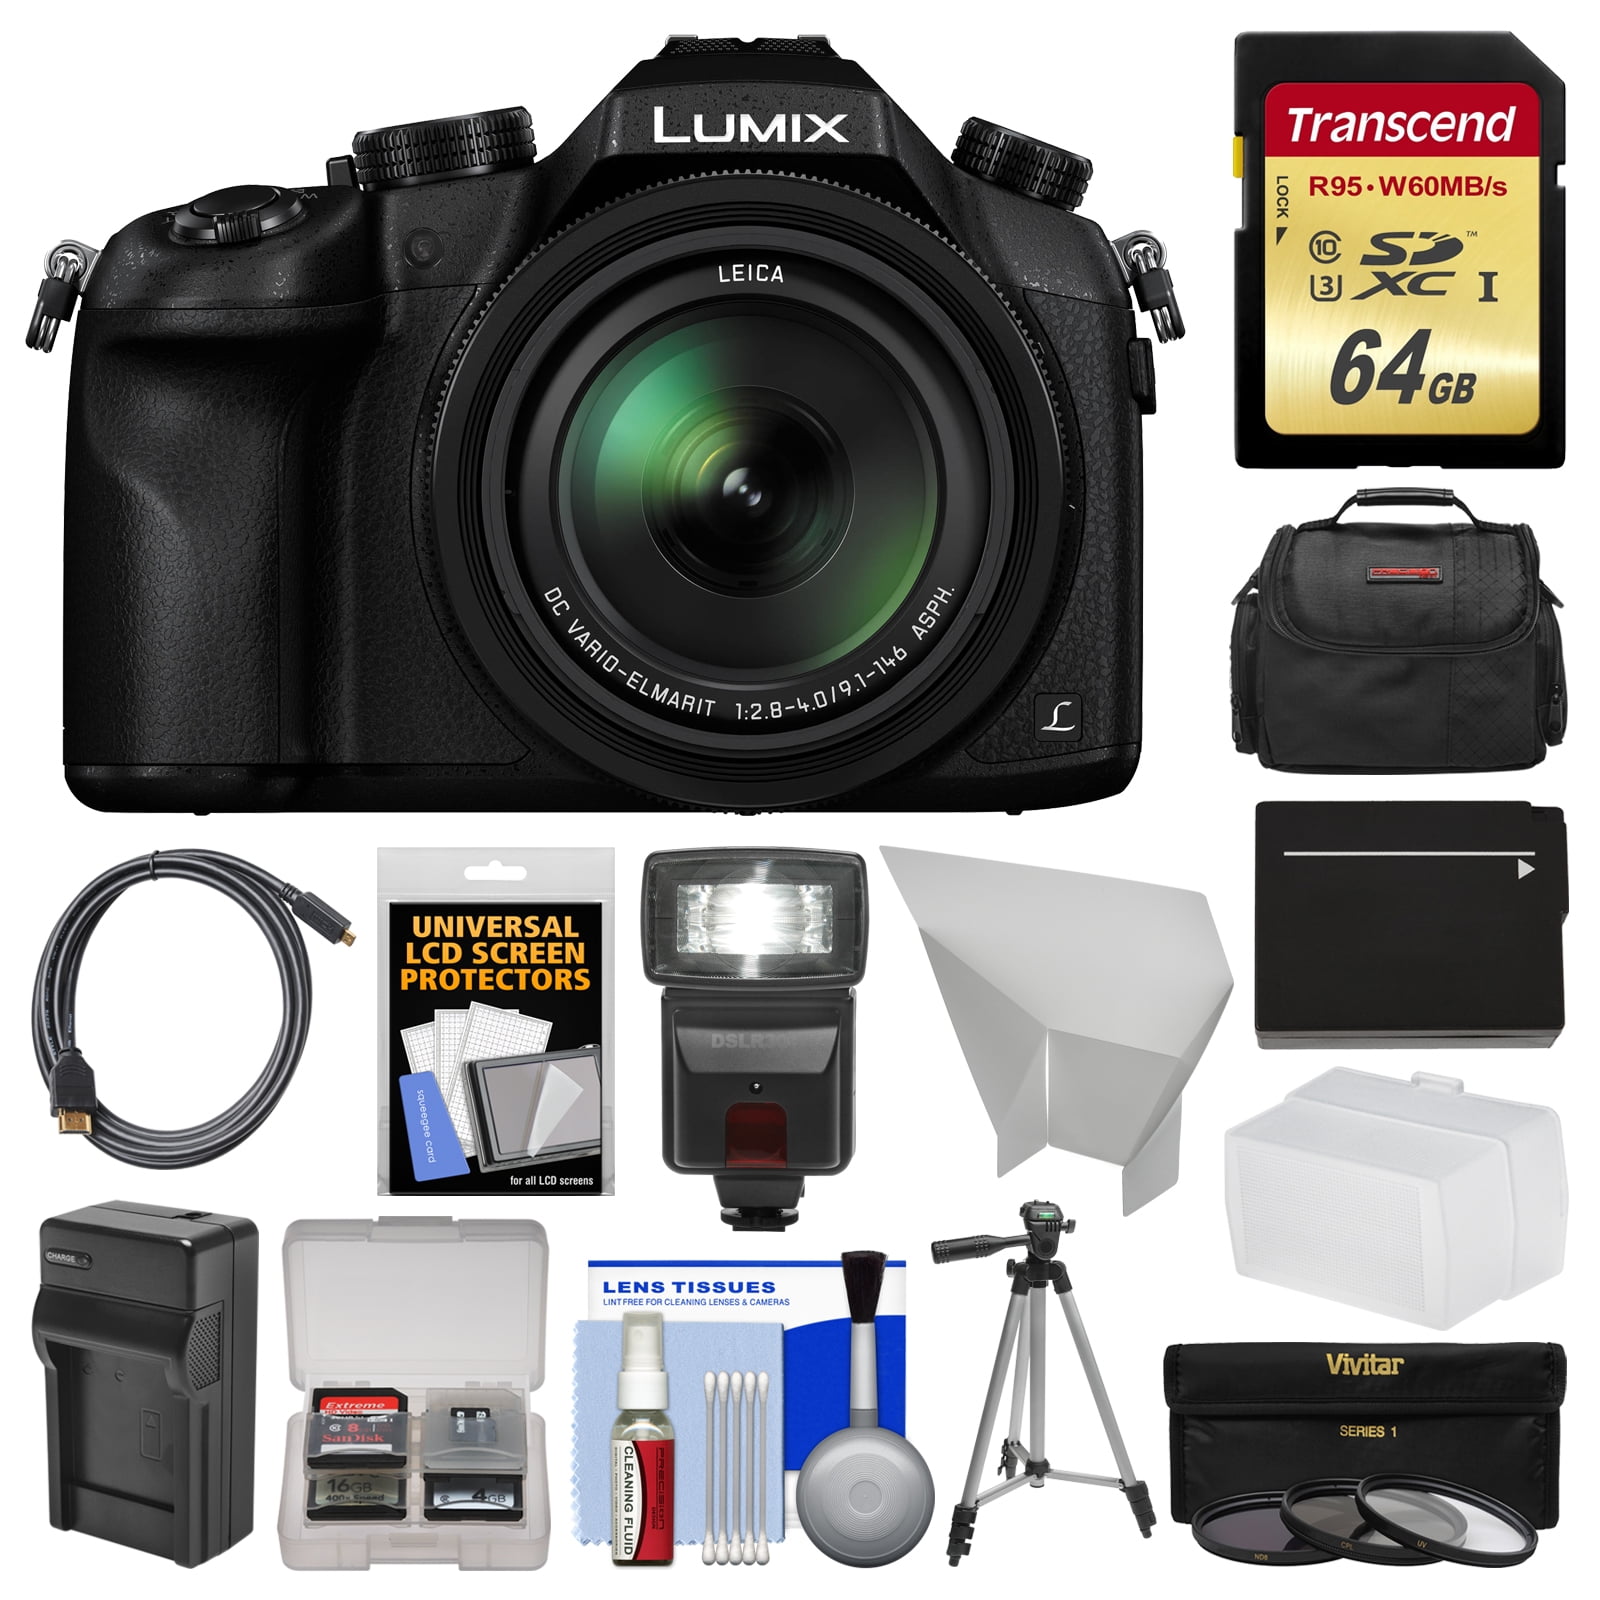 Panasonic Lumix Dmc Fz1000 4k Qfhd Wi Fi Digital Camera With 64gb Card Case Flash Battery Charger Tripod Filters Kit Walmart Com Walmart Com